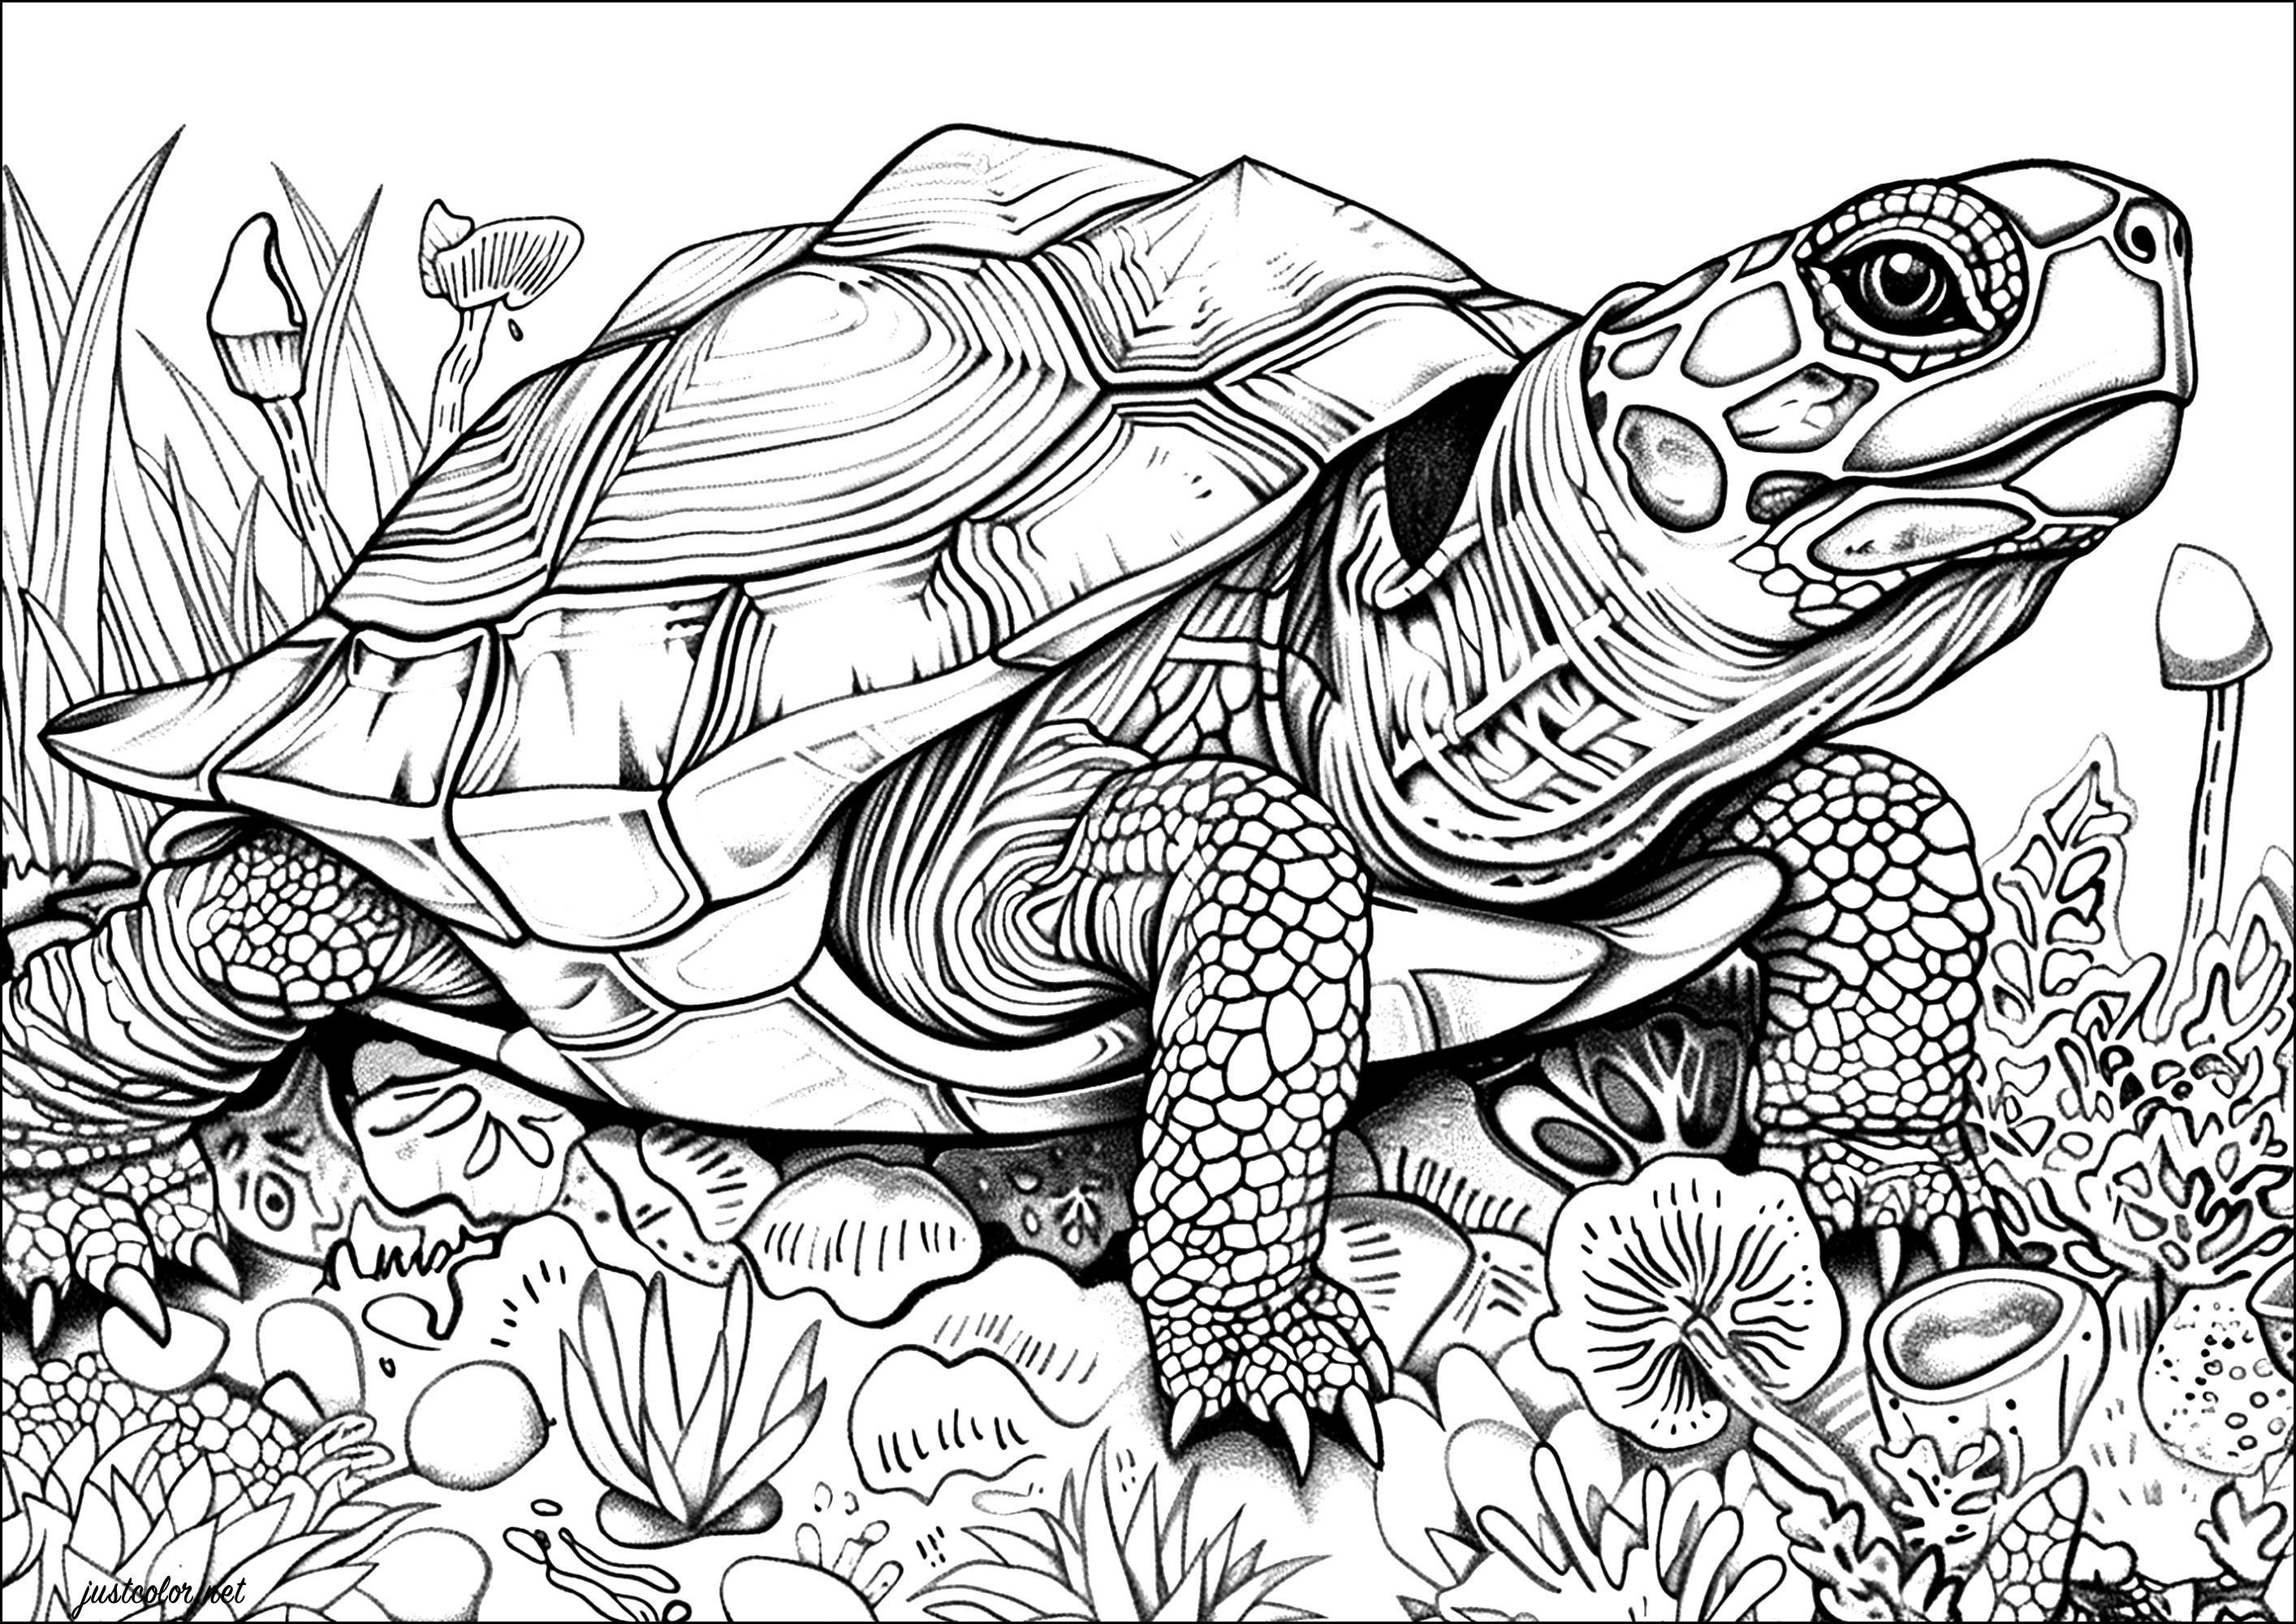 Realistische Schildkröte Färbung Seite mit vielen Details zu malen. Die Schuppen auf dem Panzer dieser Schildkröte sind so detailliert dargestellt, dass man den Eindruck hat, sie mit den Fingerspitzen berühren zu können.Nehmen Sie Ihre Bunt- oder Filzstifte und lassen Sie sich von der Schönheit dieser majestätischen Schildkröte mitreißen.